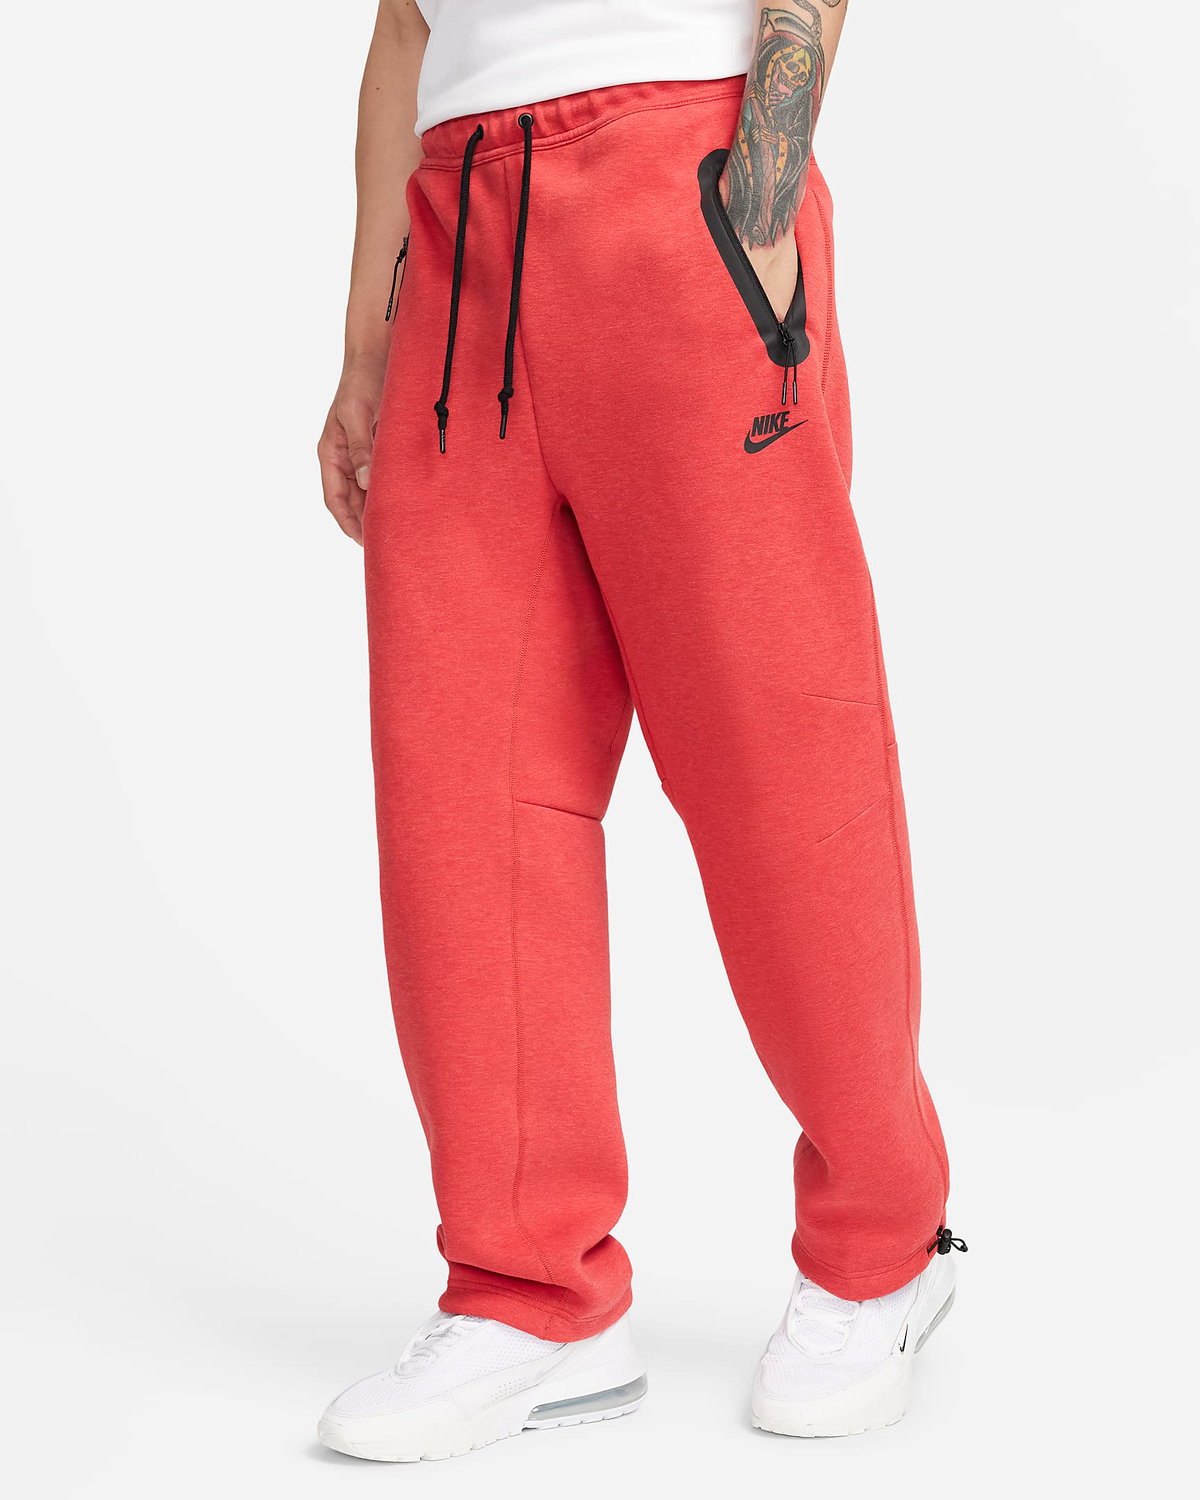 Nike-Tech-Fleece-Open-Hem-Sweatpants-Light-University-Red-Heather-Black